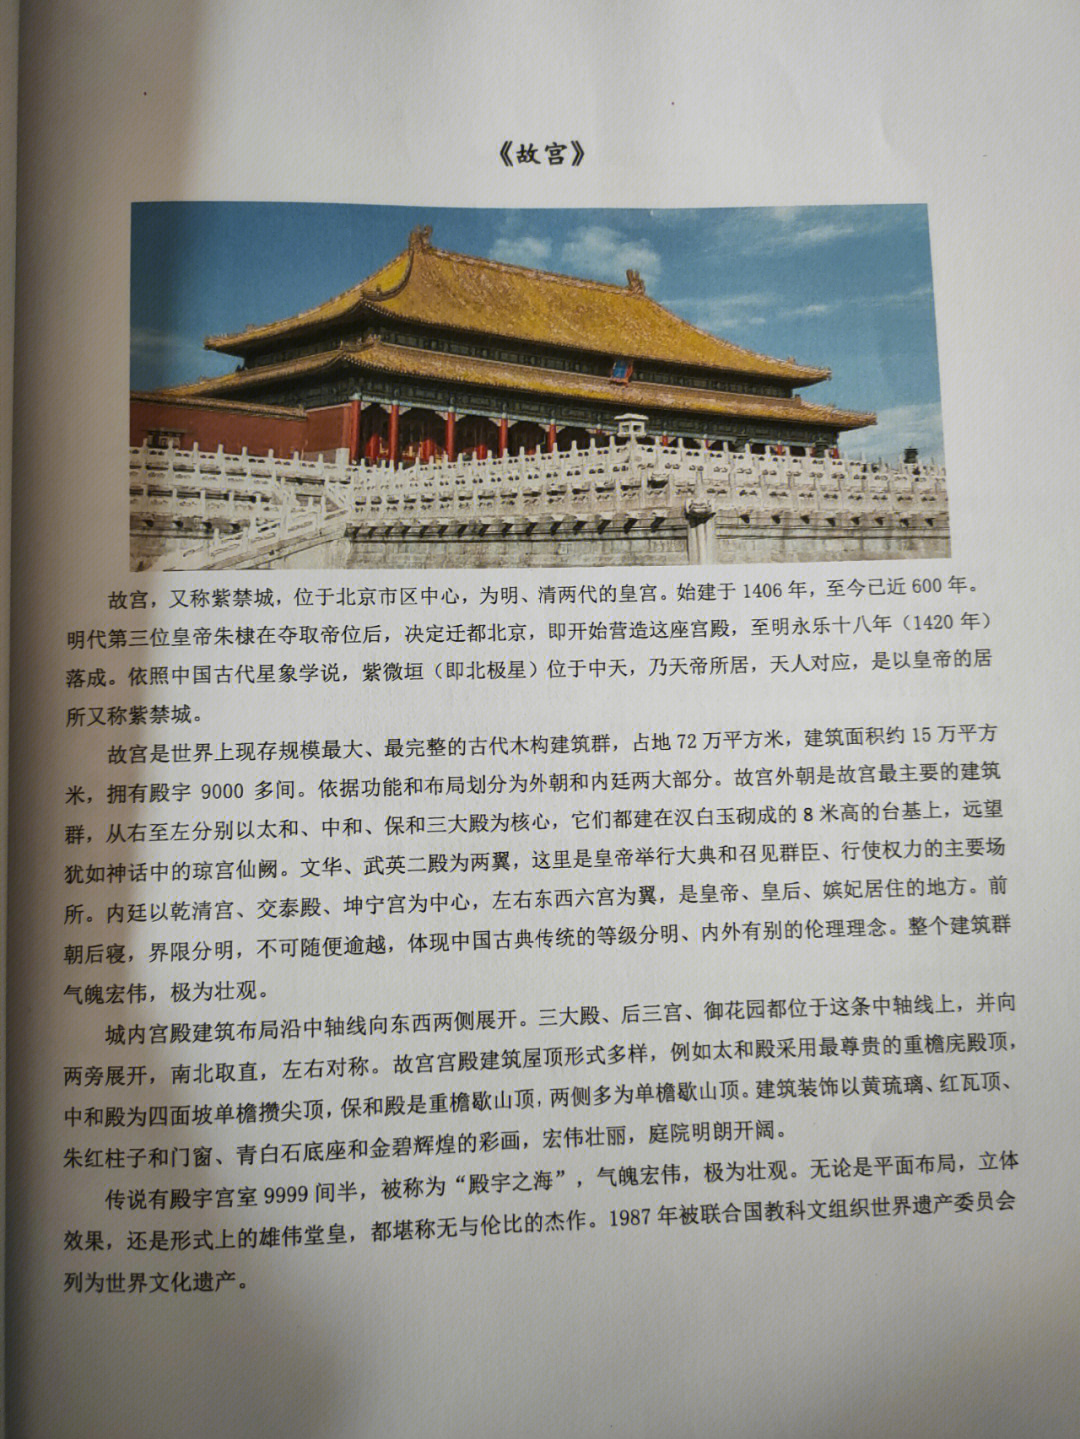 美术史  中国美术史作品分析分享,需要私聊《故宫》称呼:旧称紫禁城